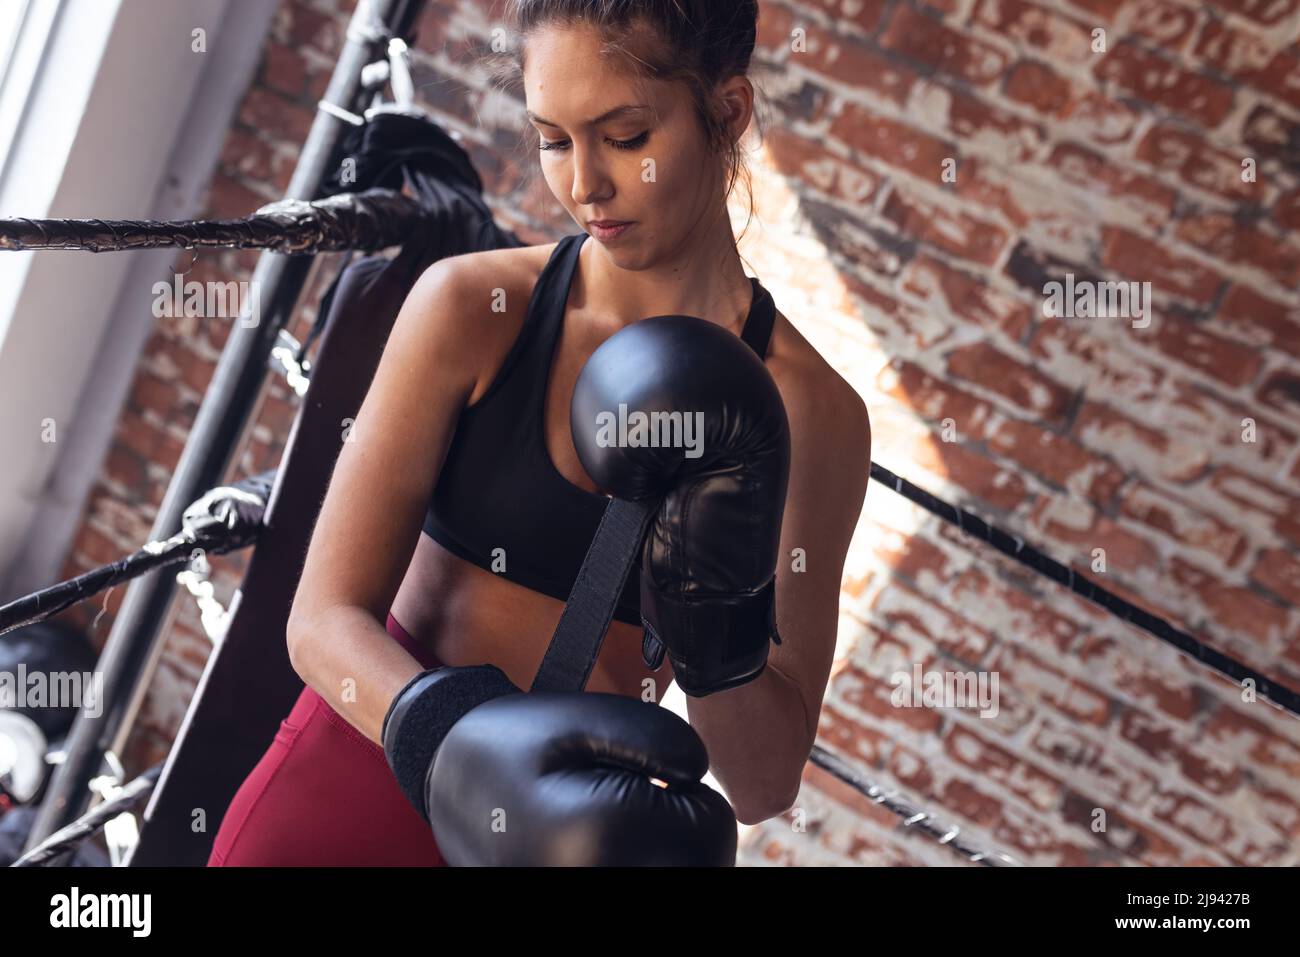 Black Female Boxer Images – Browse 20,392 Stock Photos, Vectors